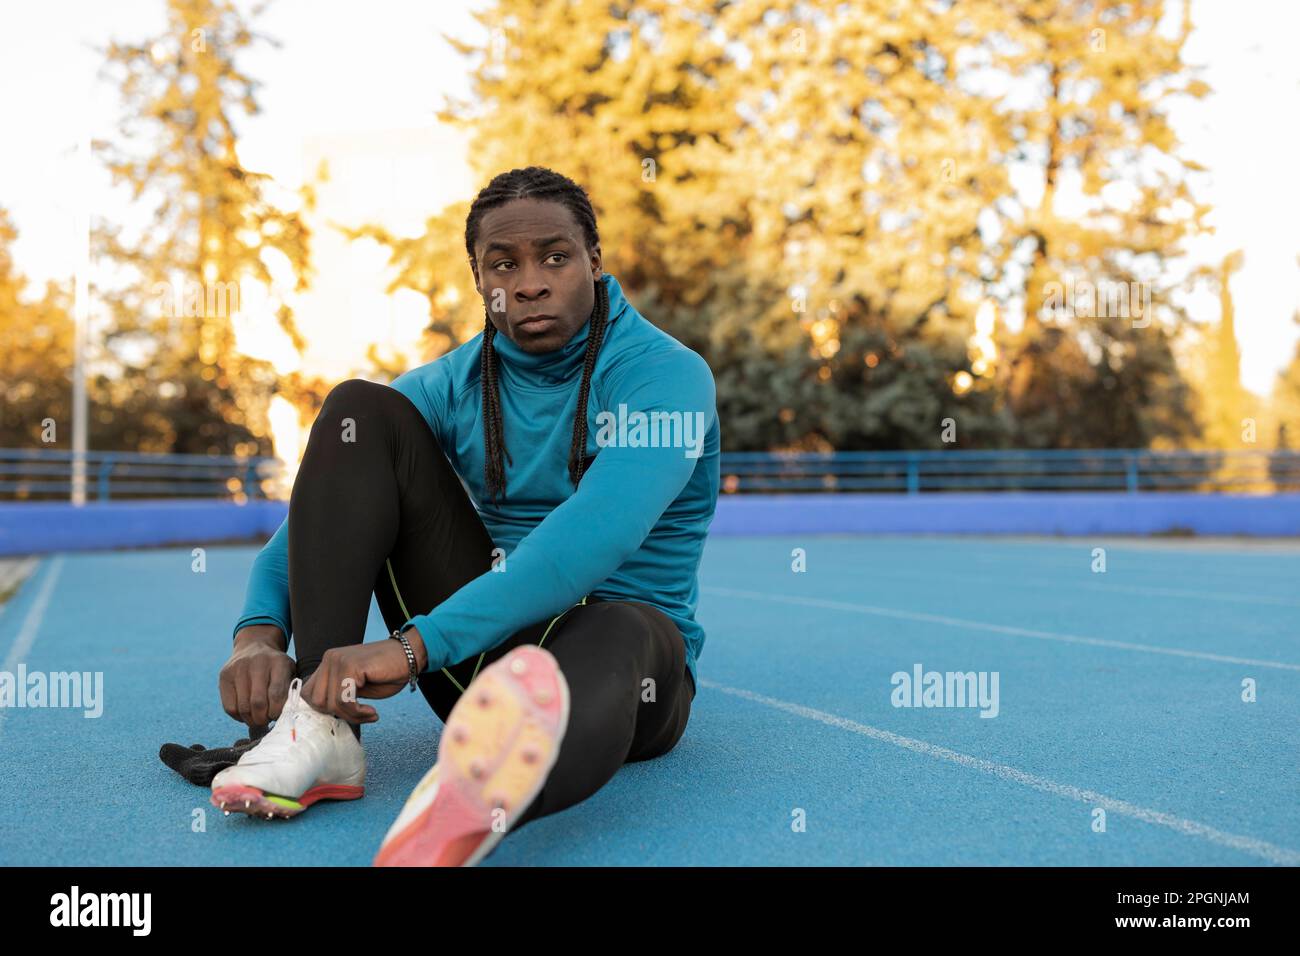 Thoughtful athlete tying shoelace sitting on sports track Stock Photo